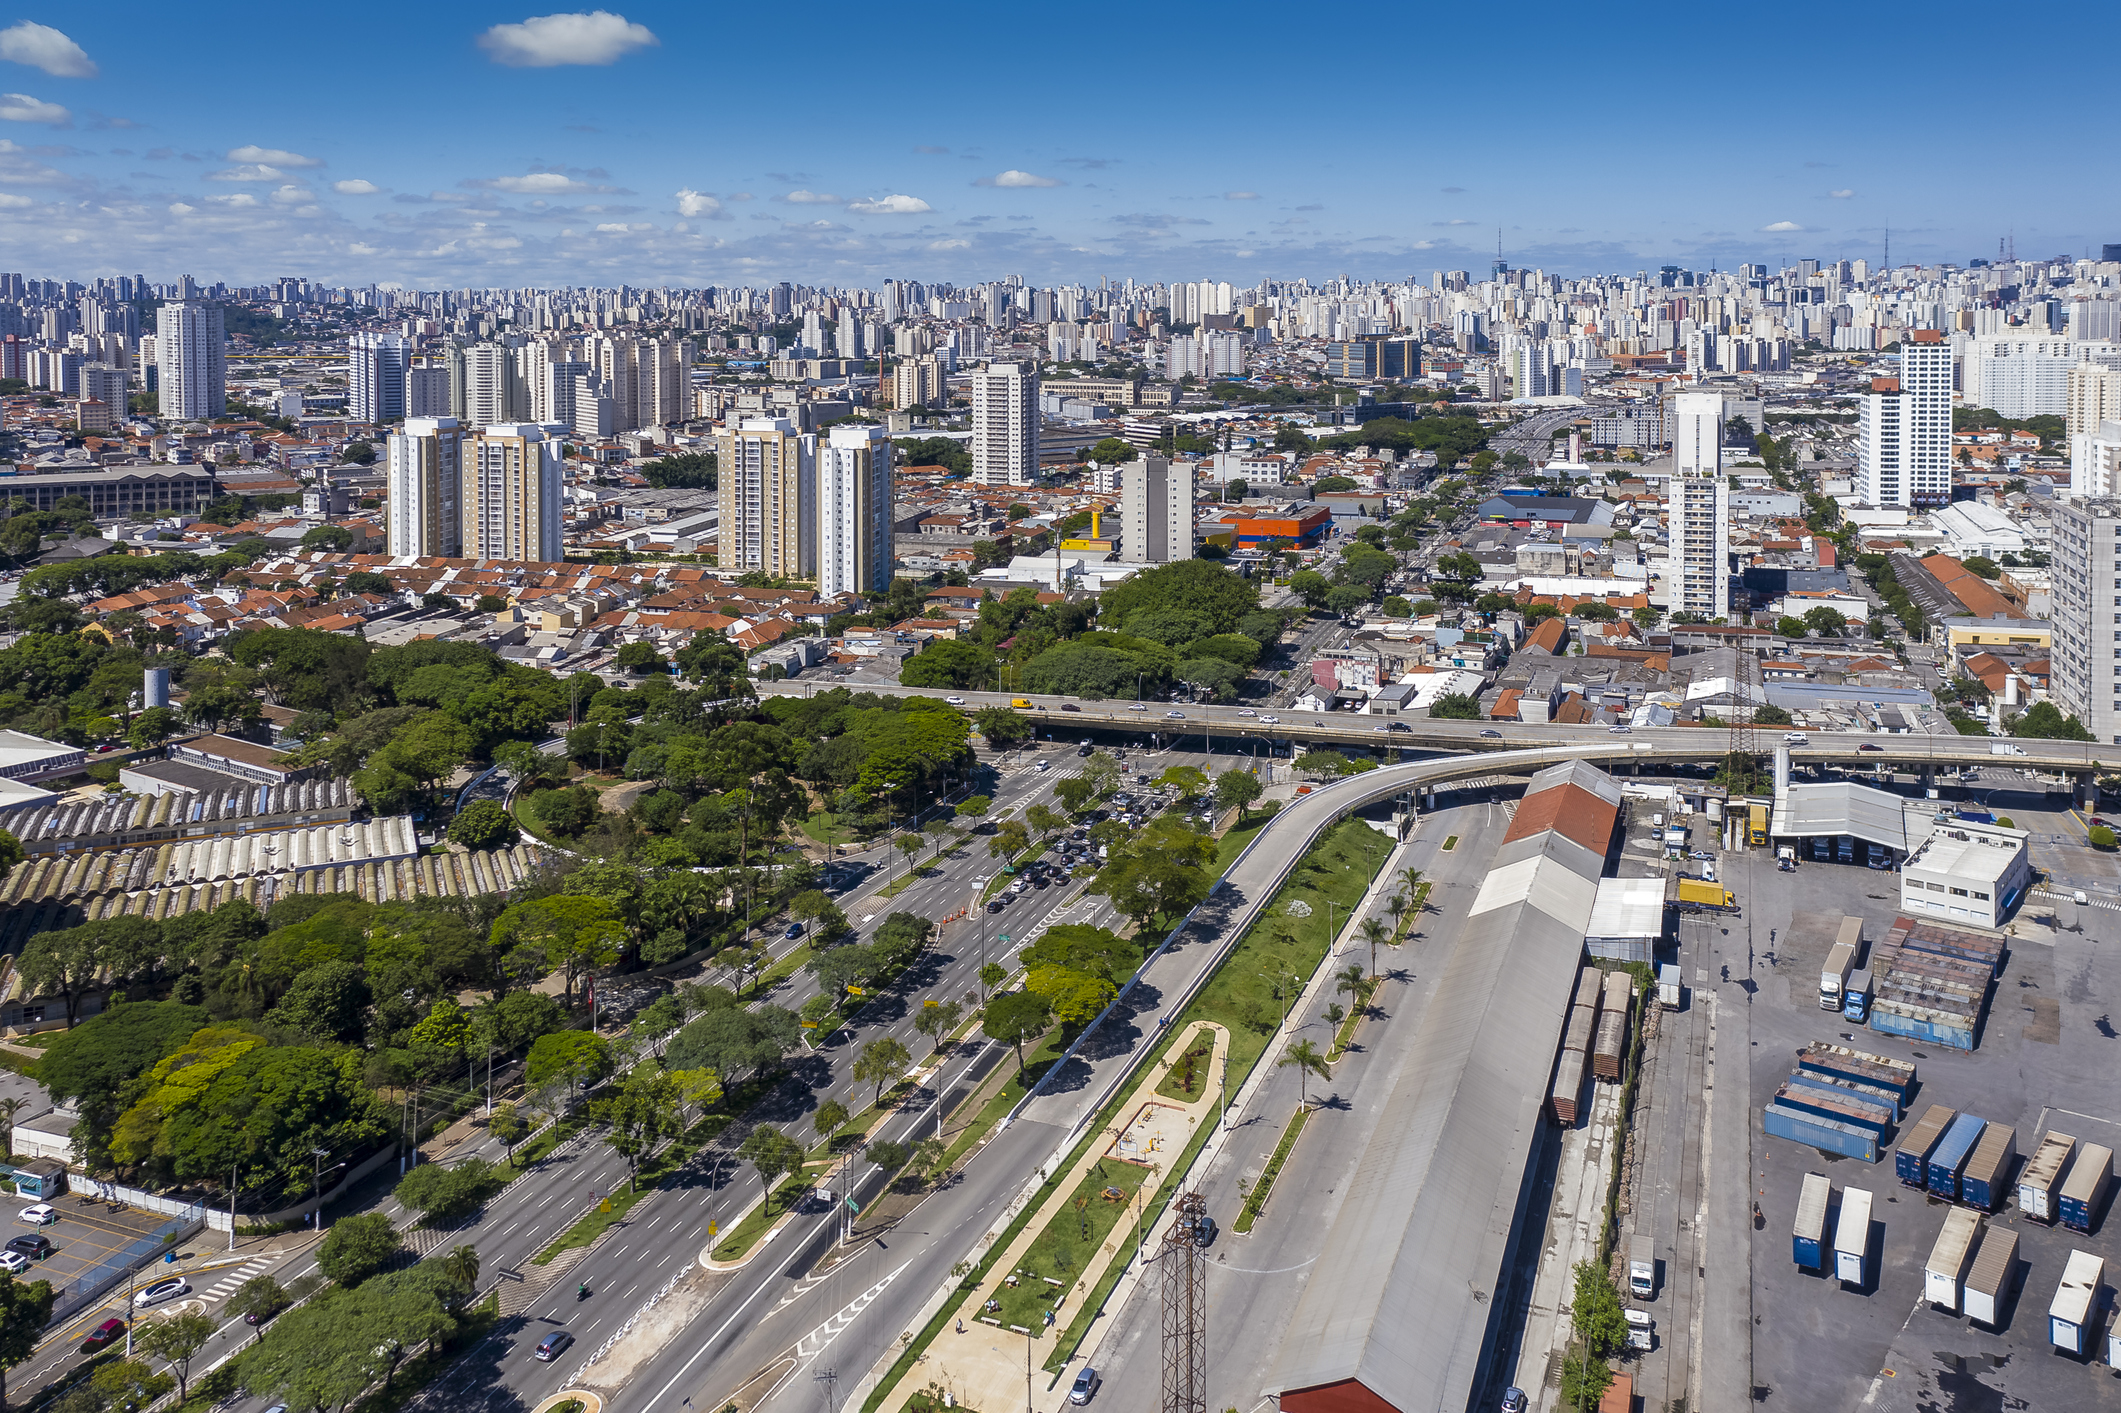 Brás registra mais de 31 vezes o índice de homicídios da Mooca em SP, diz  pesquisa, São Paulo